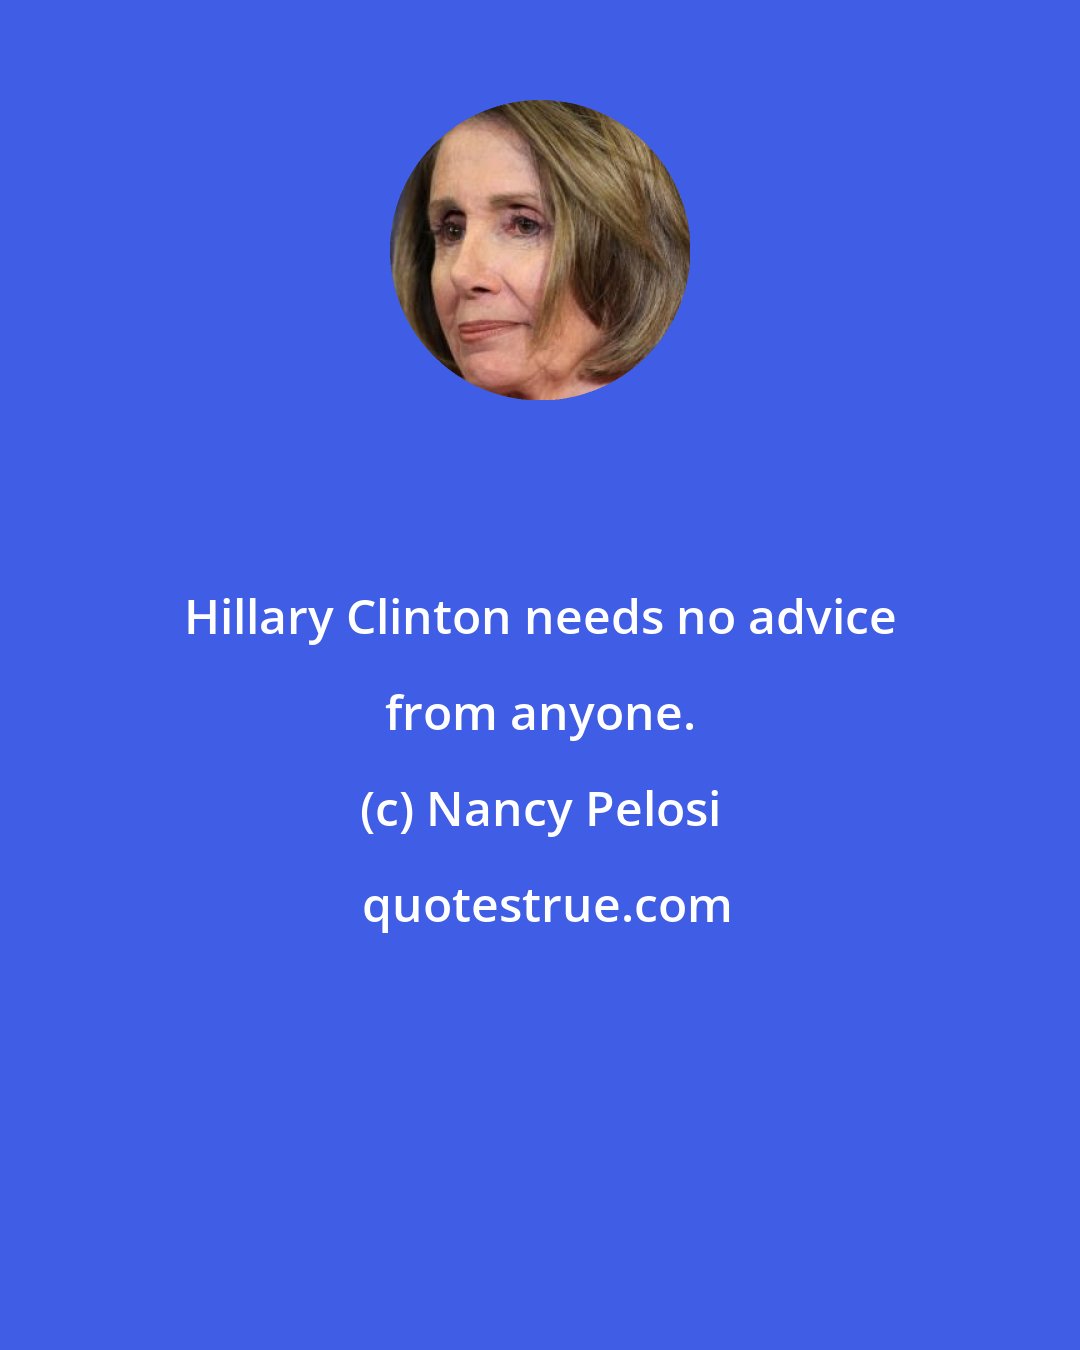 Nancy Pelosi: Hillary Clinton needs no advice from anyone.